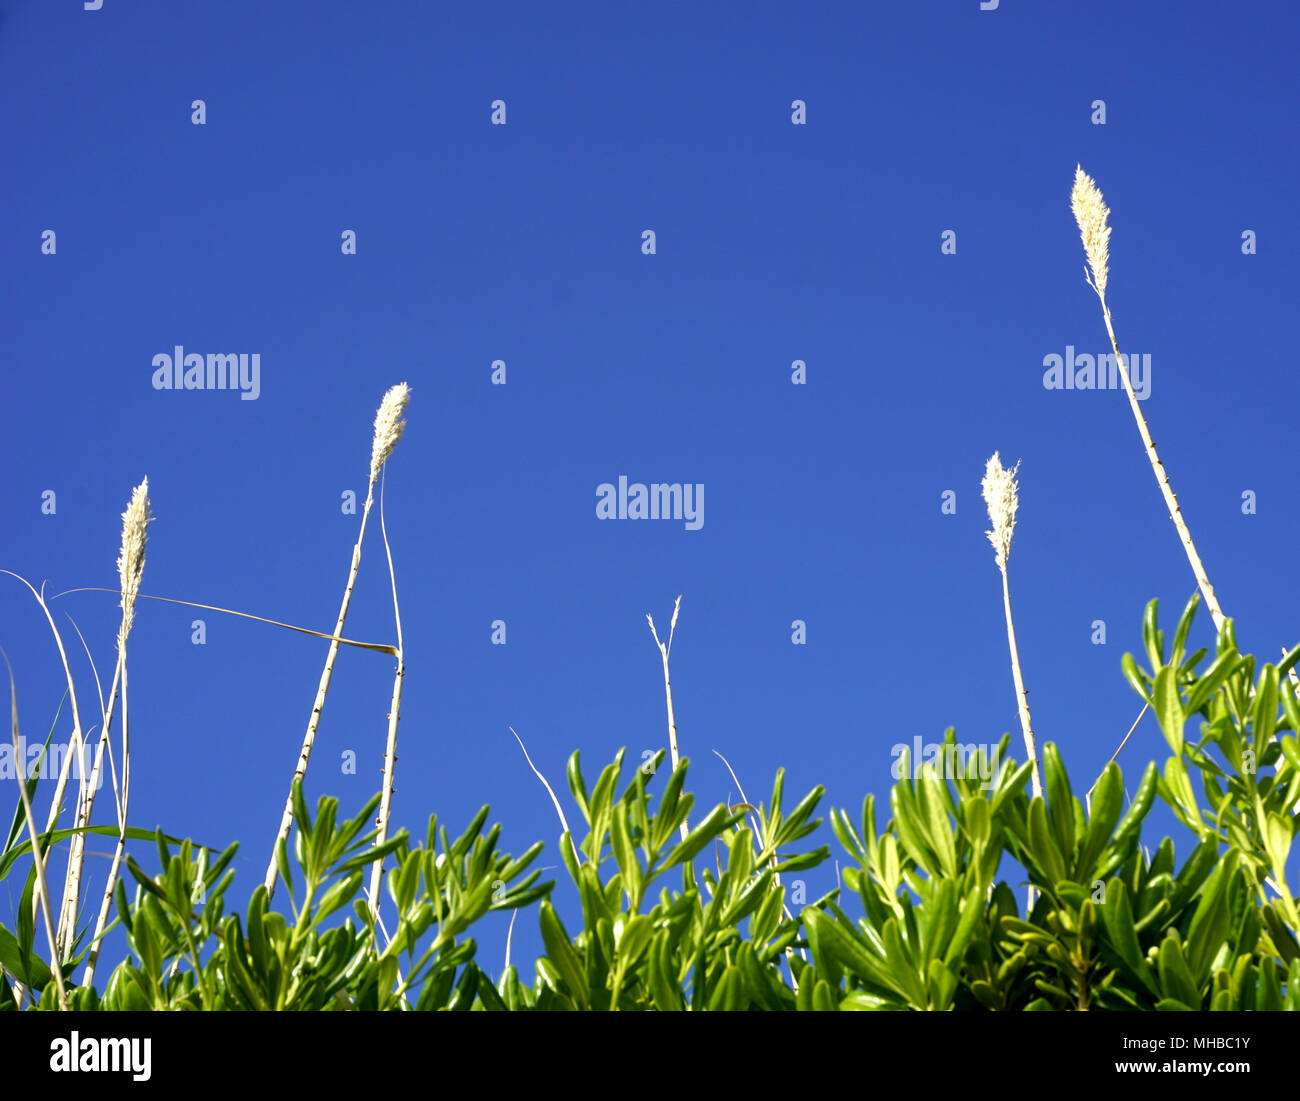 L'offerta di fiori sulla parte superiore del grande reed erba e foglie verdi della pianta mediterranea Myrtus communis, mirto, con sky in turchese colore blu. Col Foto Stock